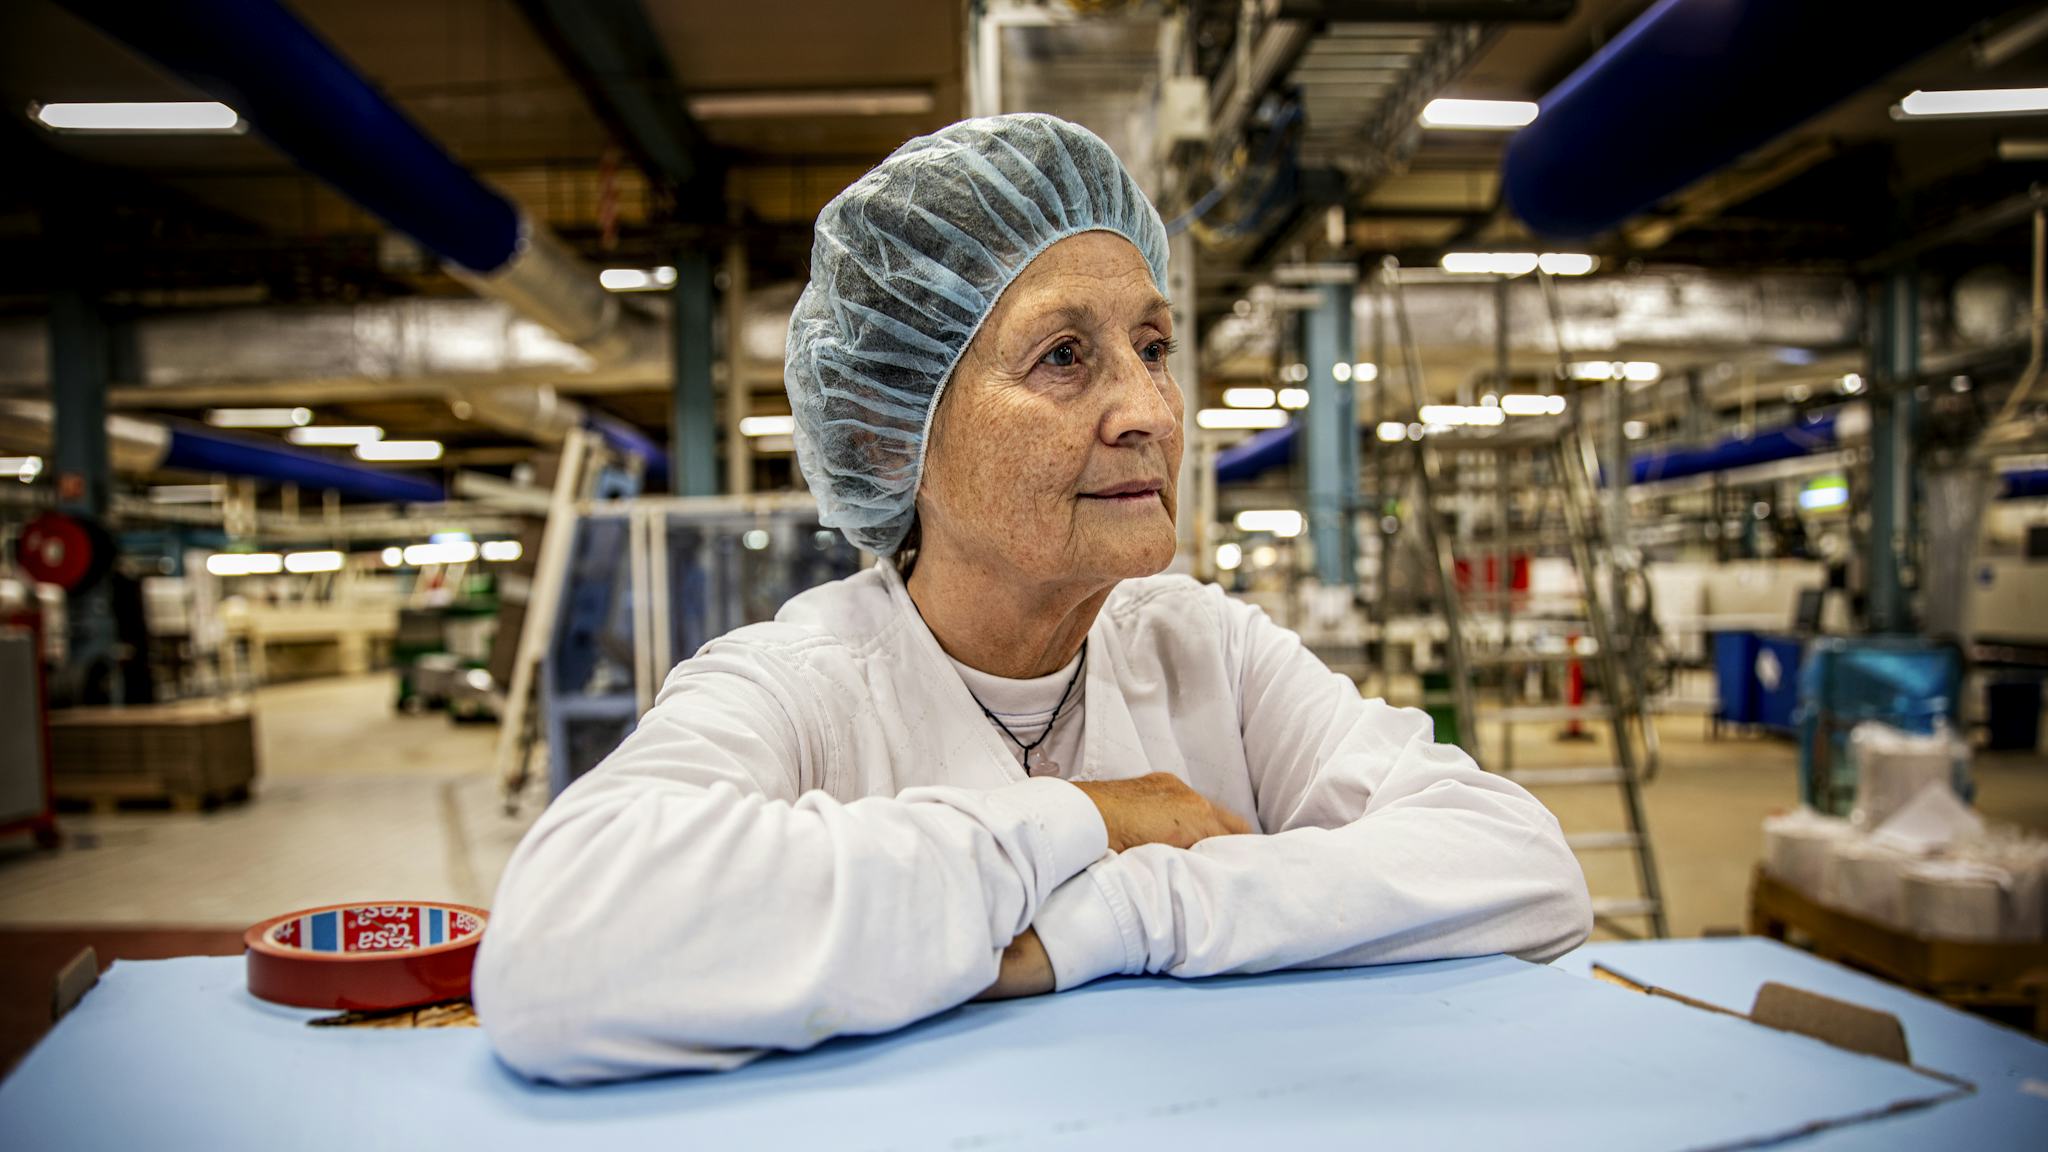 Birthe Karlsson, 64 år, har arbetat på Göteborgs Kex sedan 1979. Nu är hon orolig över vad som kommer att hända när fabriken stänger. ”Vem vill anställa mig? Jag har ett år kvar till pension.”